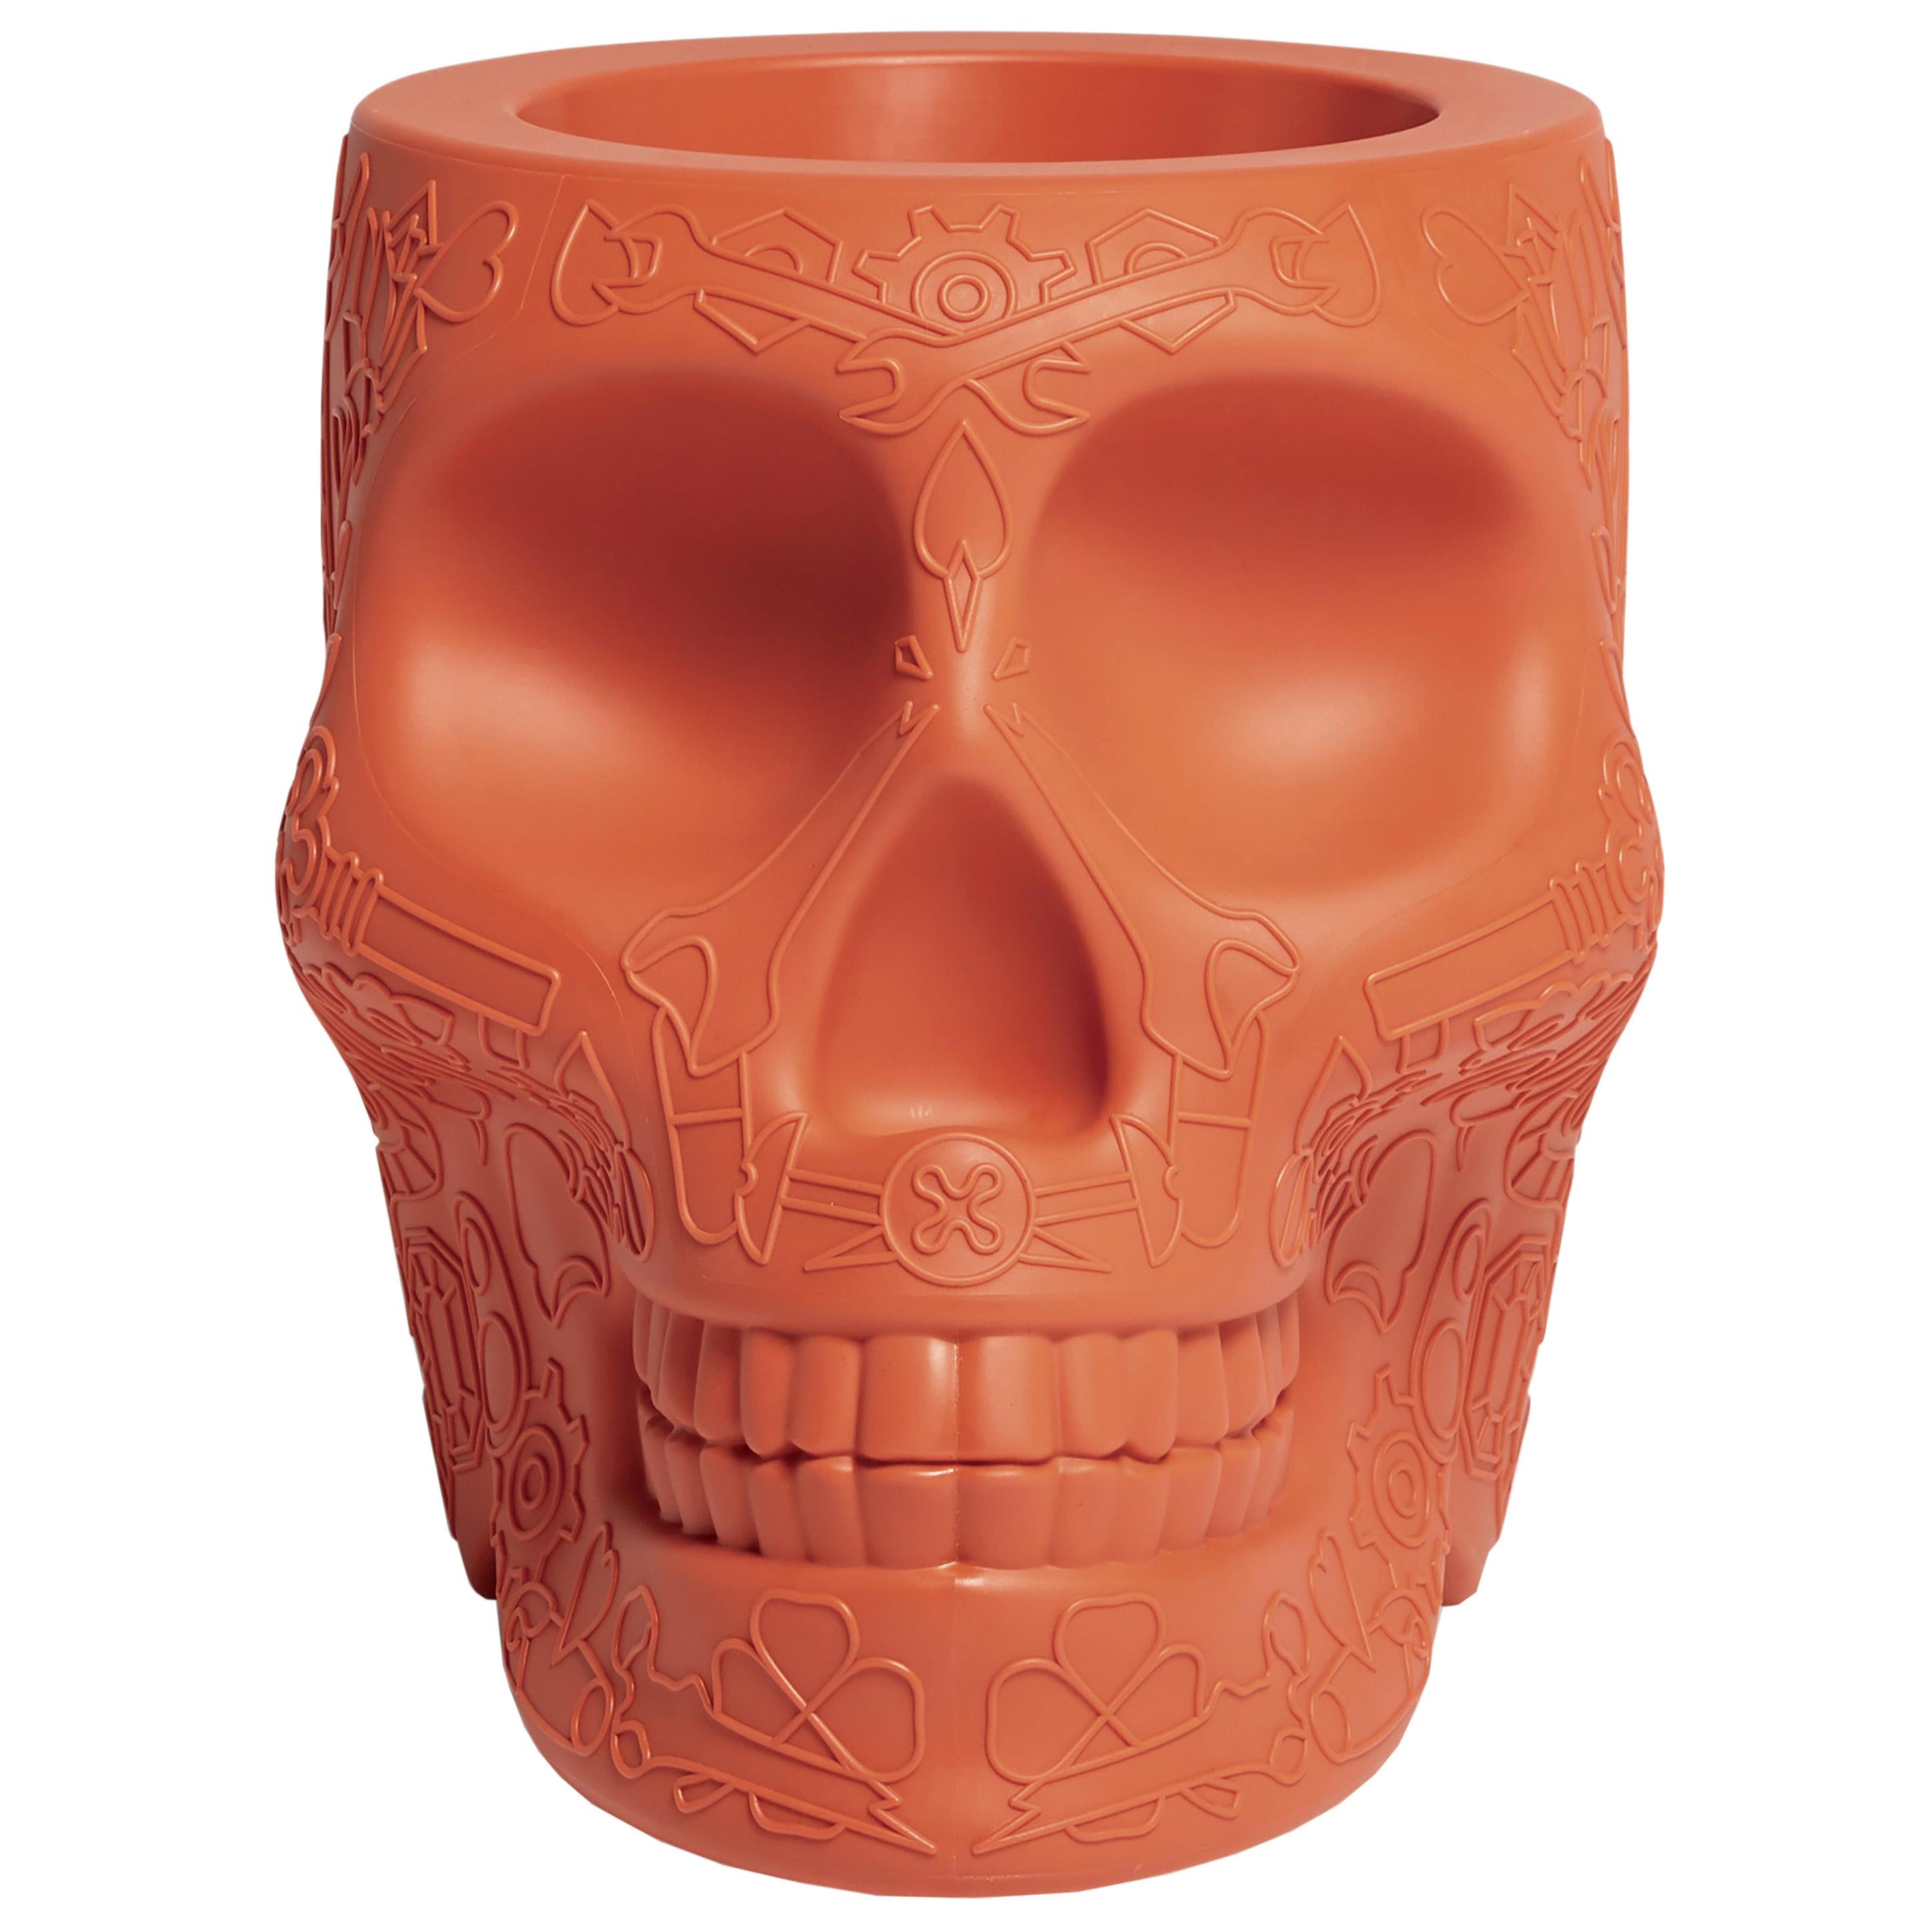 For Sale: Orange (Terracotta) Modern Skull Terracotta Plastic Planter or Champagne Cooler by Studio Job